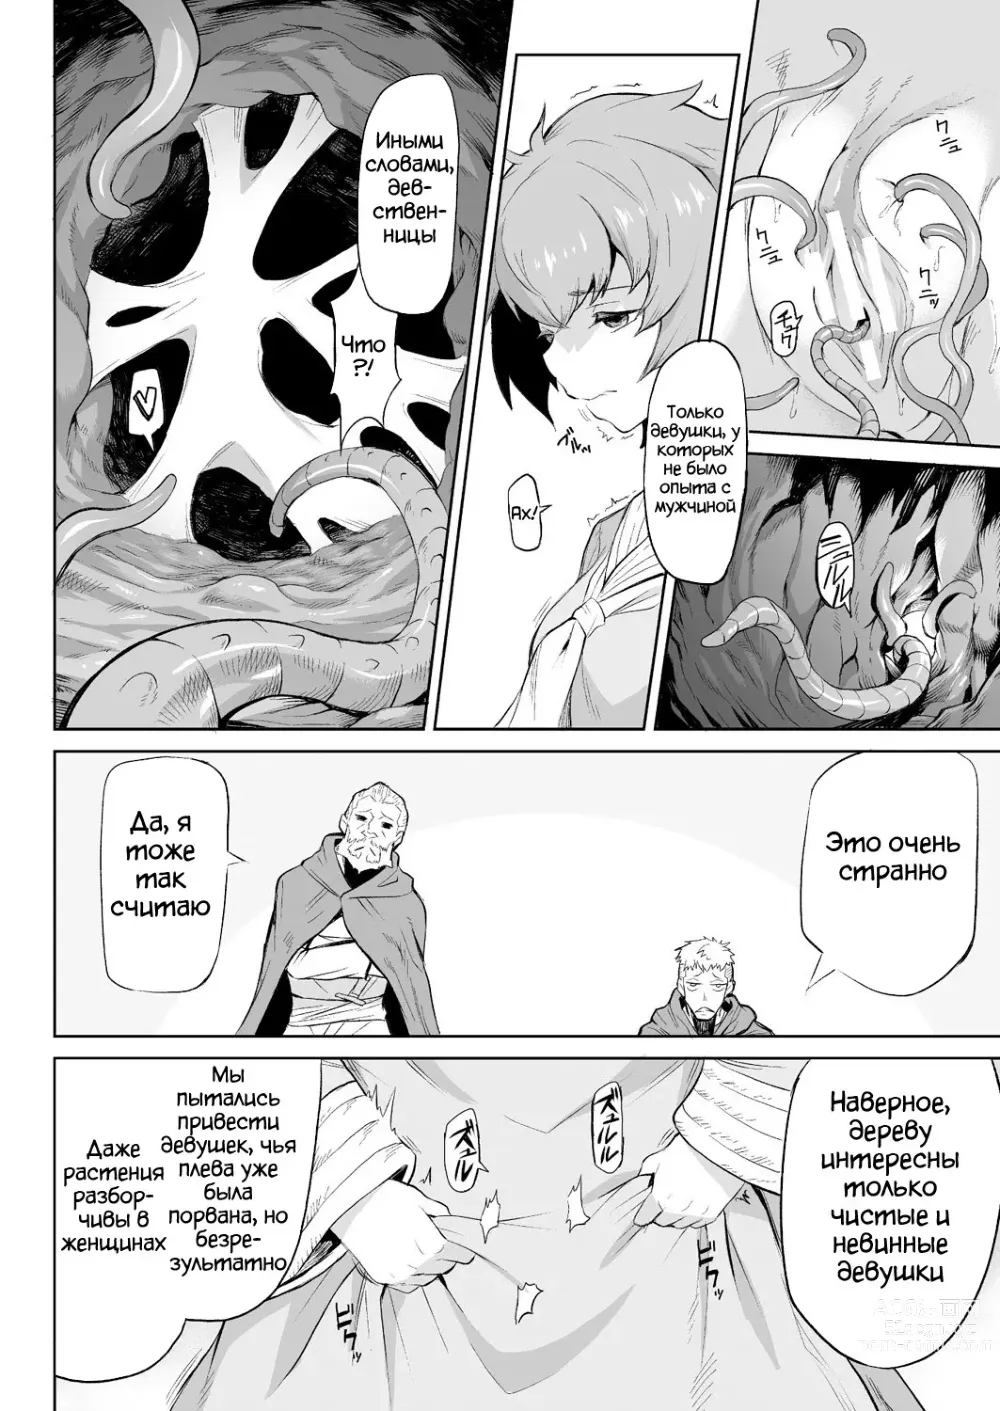 Page 7 of manga Parasite Tree